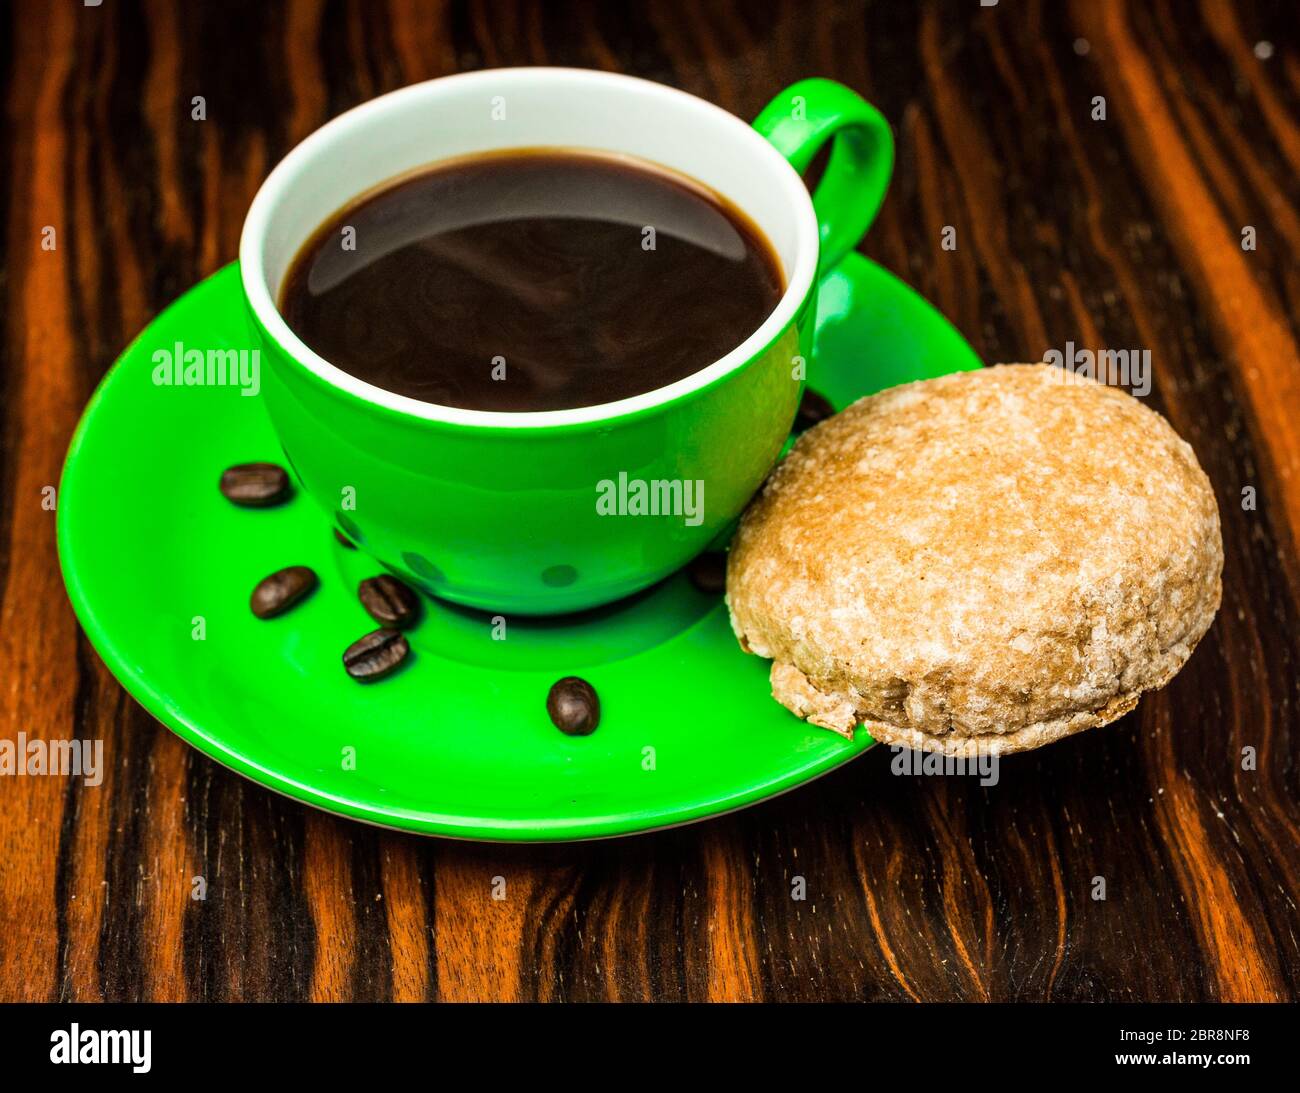 Braun geröstete Kaffeebohnen, Samen auf dunklem Hintergrund. Espresso dunkel, Aroma, schwarzen Koffein Getränk. Closeup isolierte Energie Mokka, Cappuccino Zutat. Stockfoto